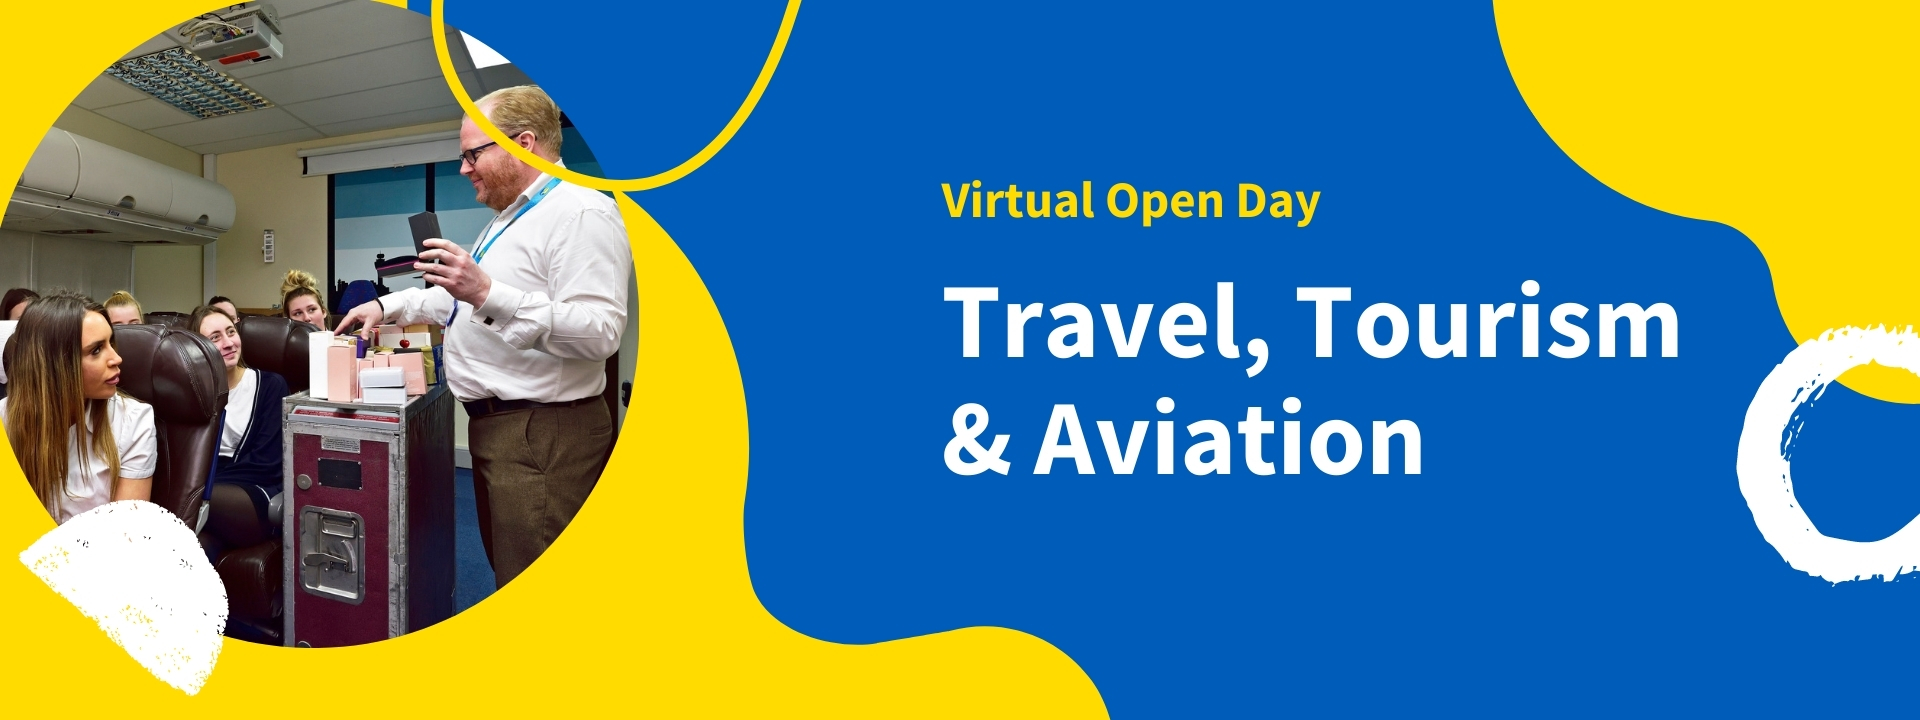 Travel, Tourism & Aviation 